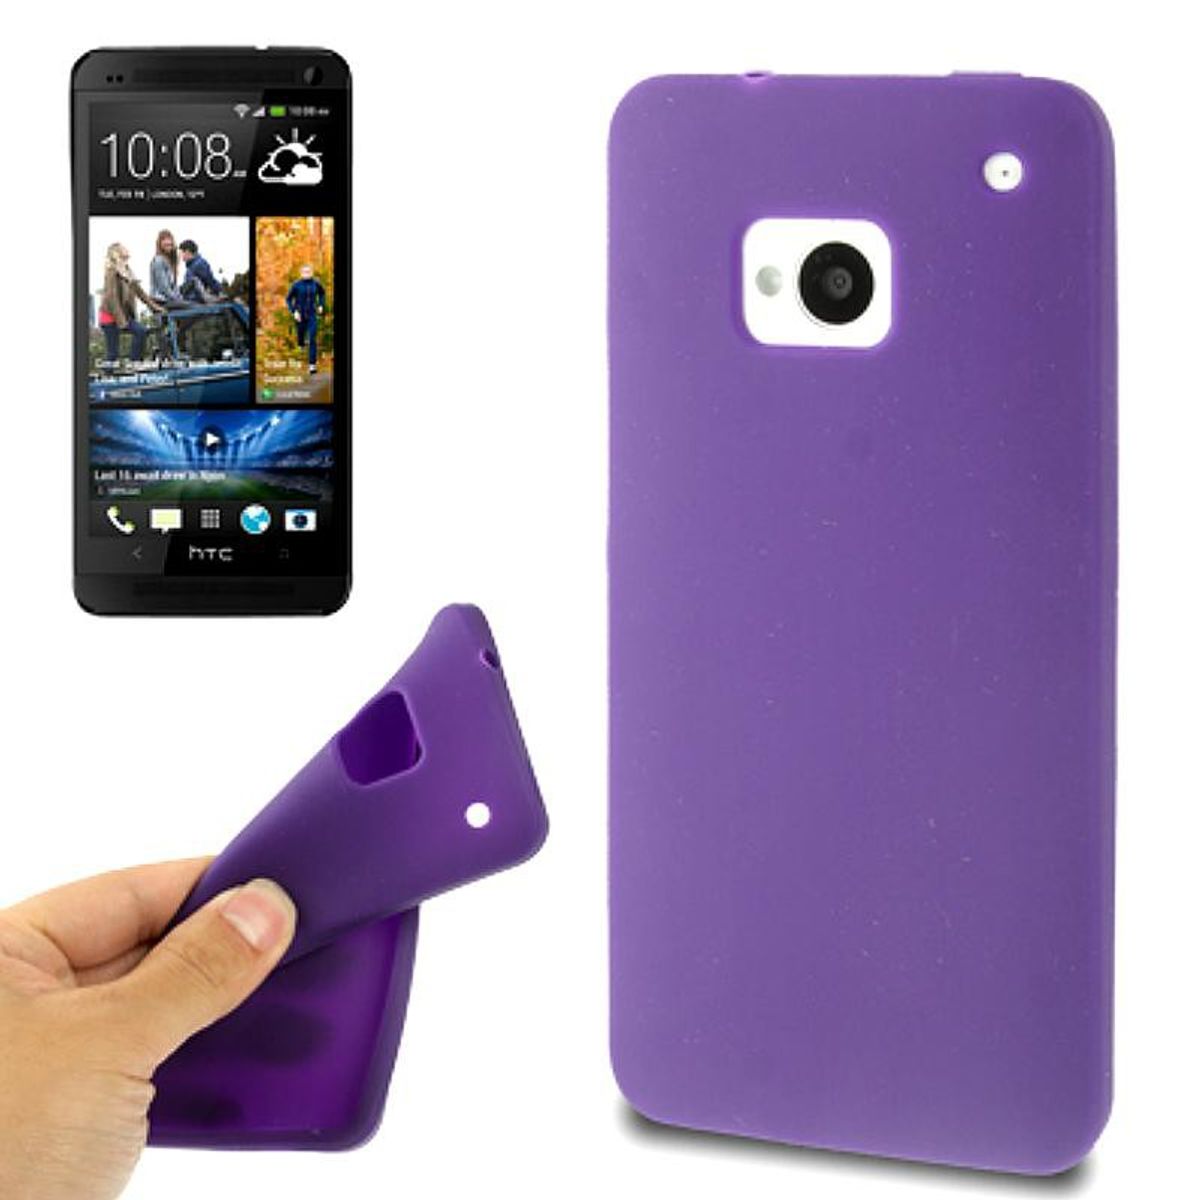 Schutzhülle Silikon Case für Handy HTC One M7 Lila / Violett